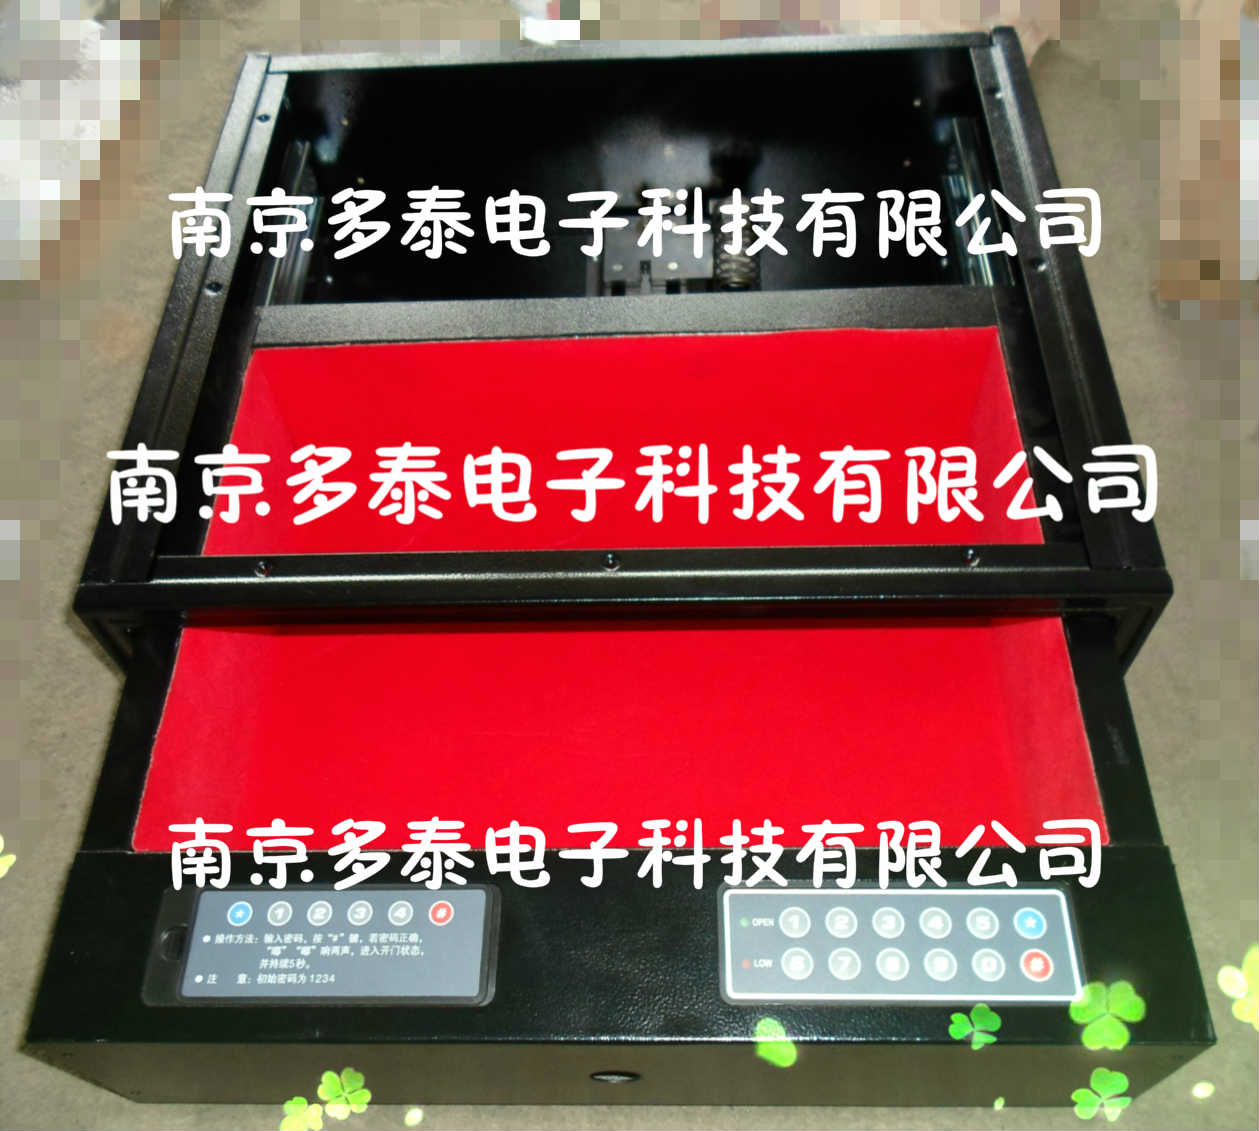 供应南京多泰保险柜保险箱密码锁指纹锁厂家低价优惠价批发供应